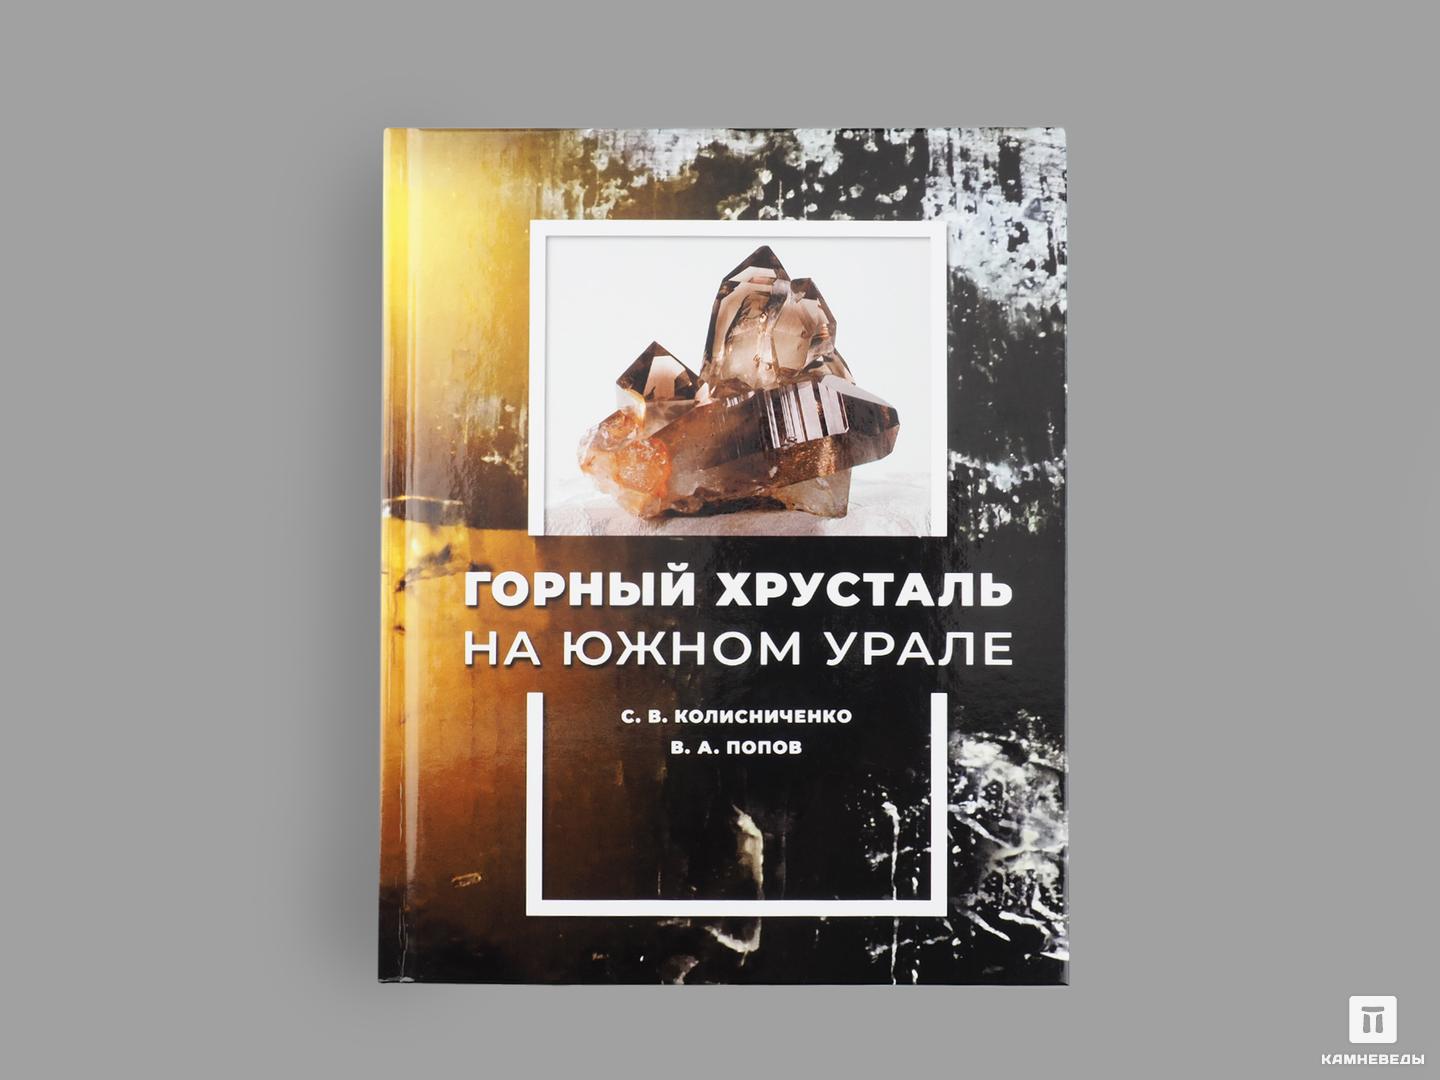 Книга: С.В. Колисниченко, В.А. Попов «Горный хрусталь на Южном Урале» на земле под небесами избранное